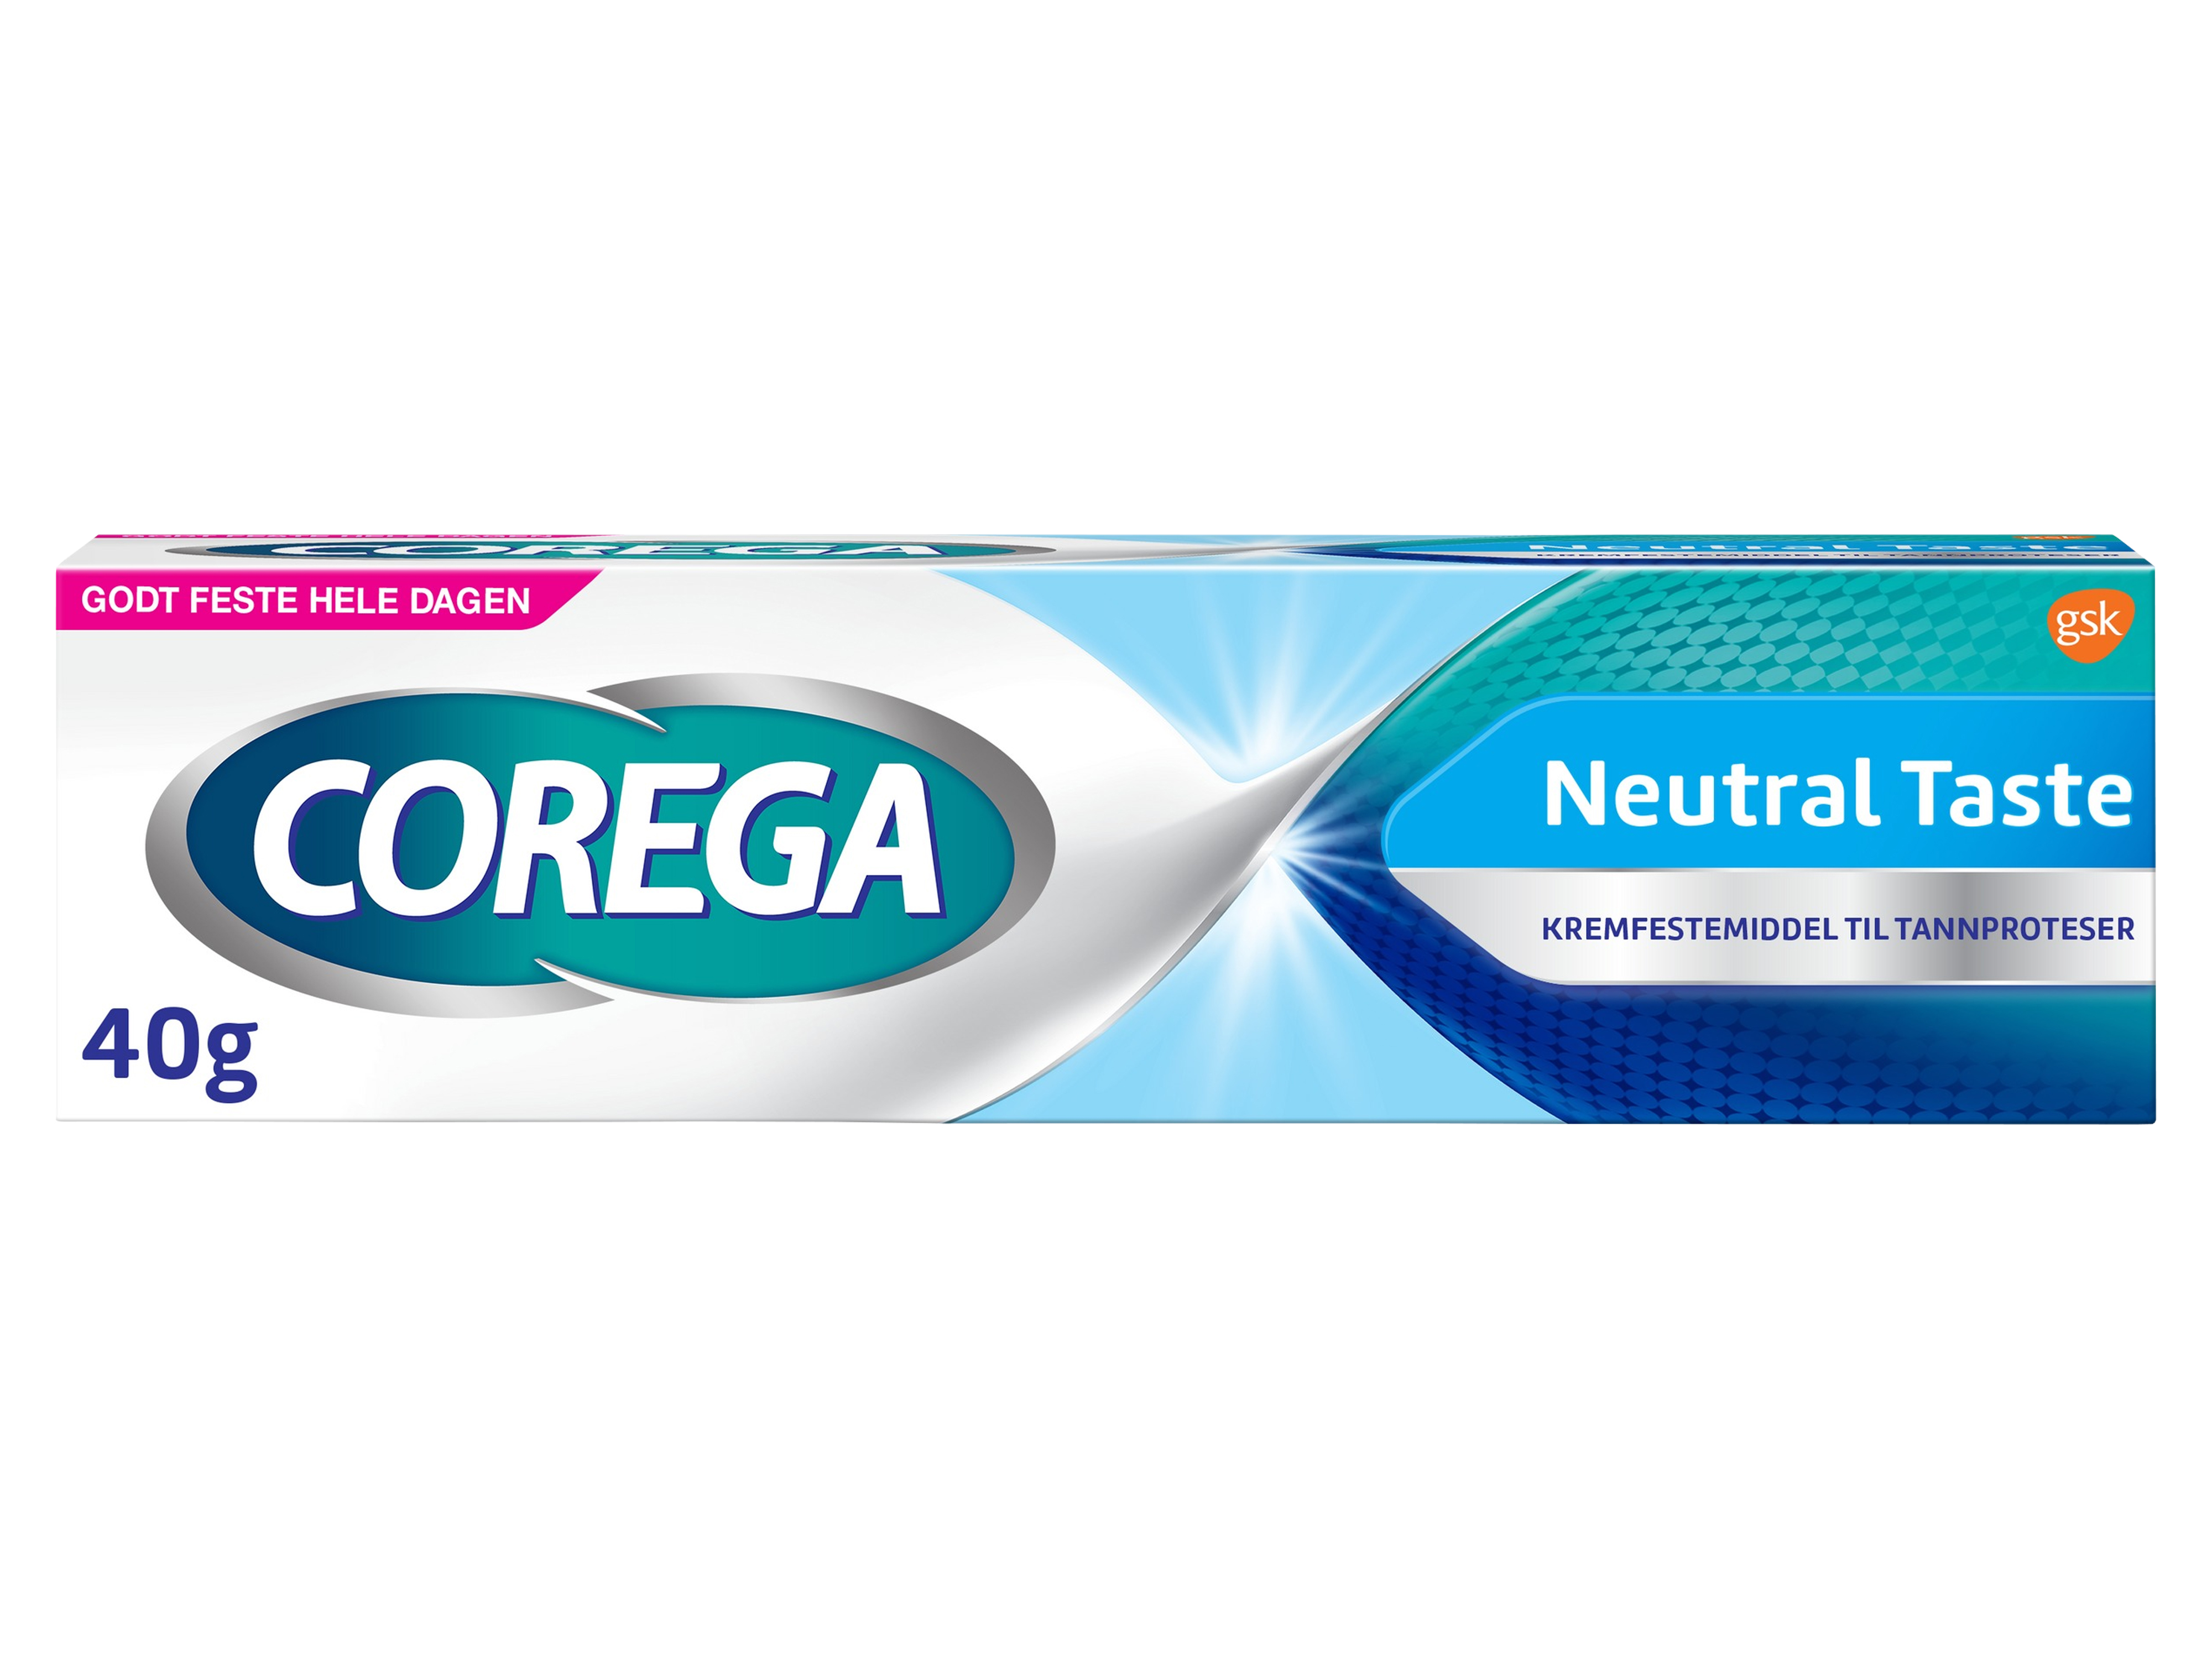 Corega Neutral taste festemiddel, 40 gram